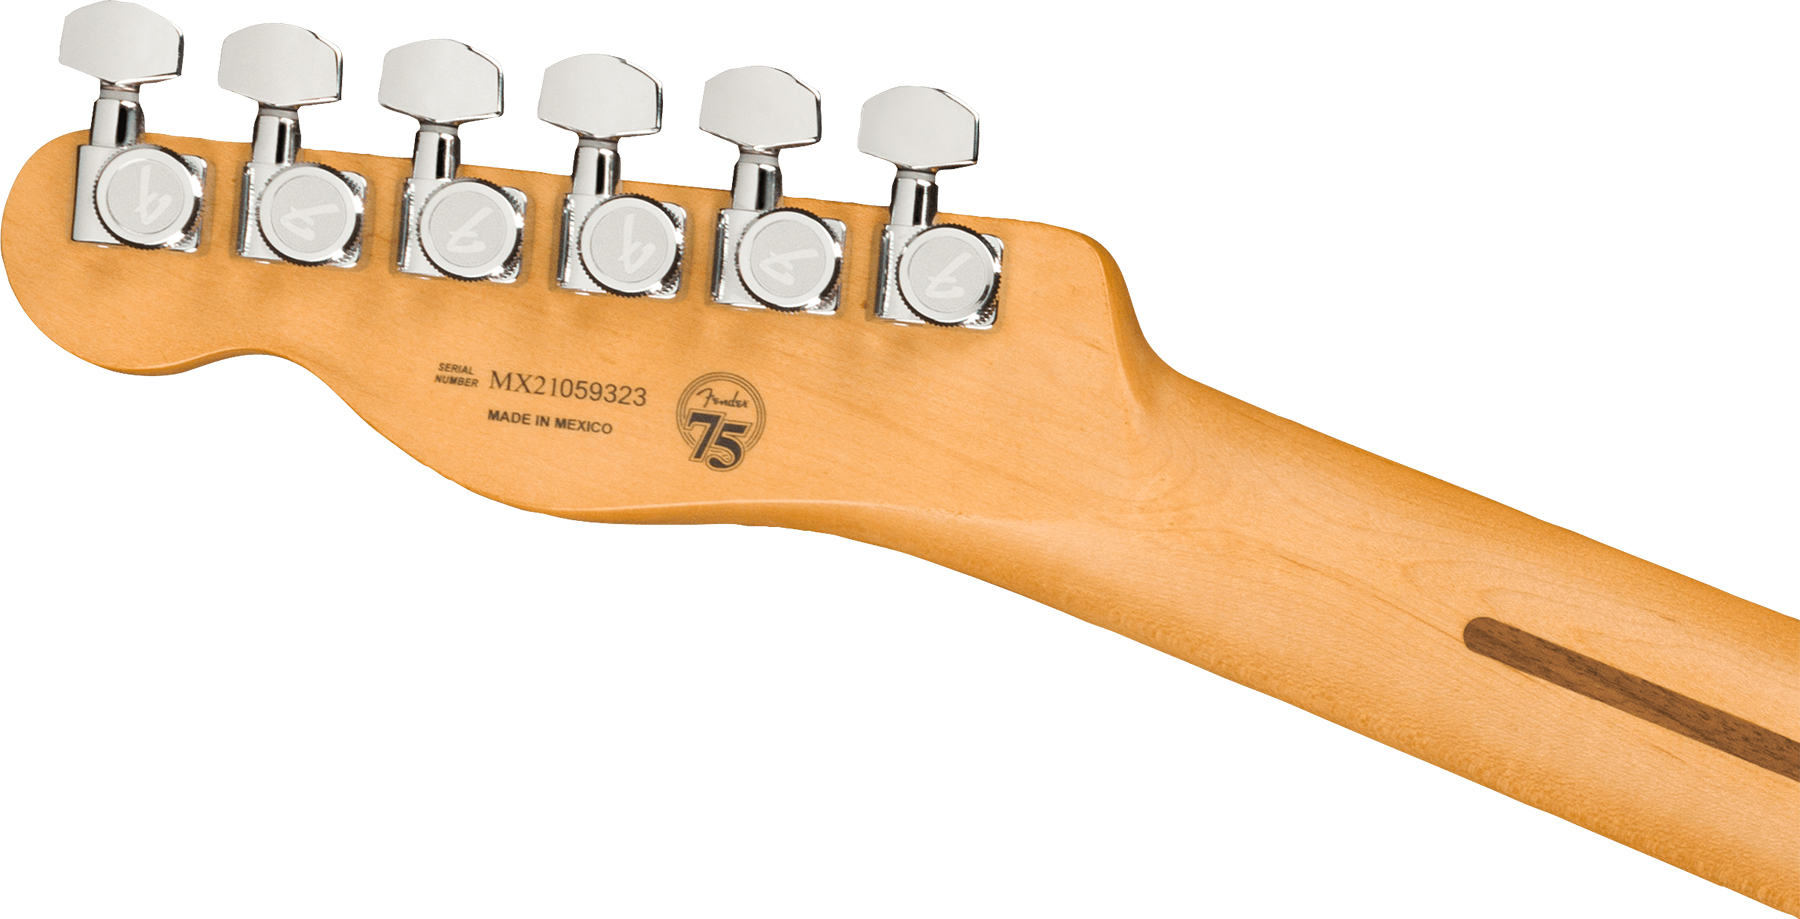 Fender Tele Player Plus Mex 2s Ht Mn - 3-color Sunburst - Guitarra eléctrica con forma de tel - Variation 3